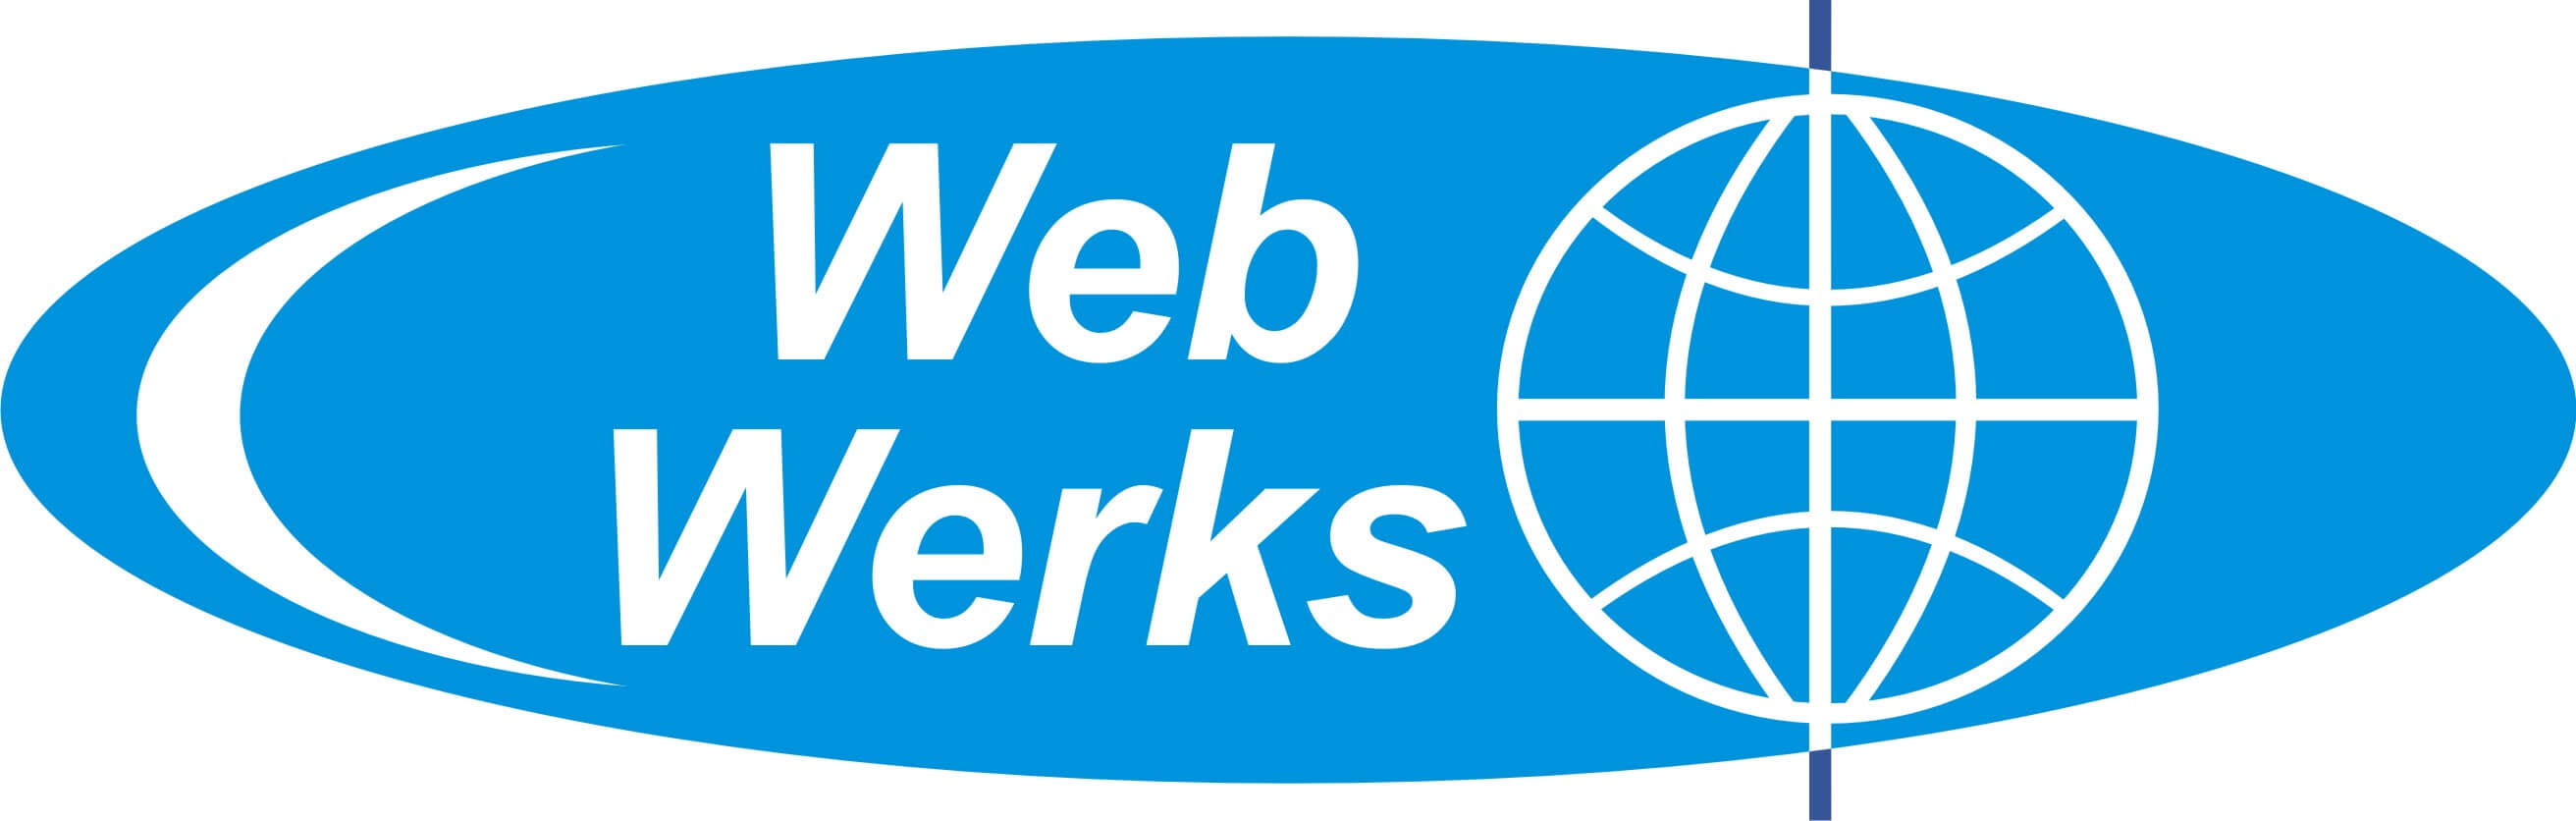 webwerks